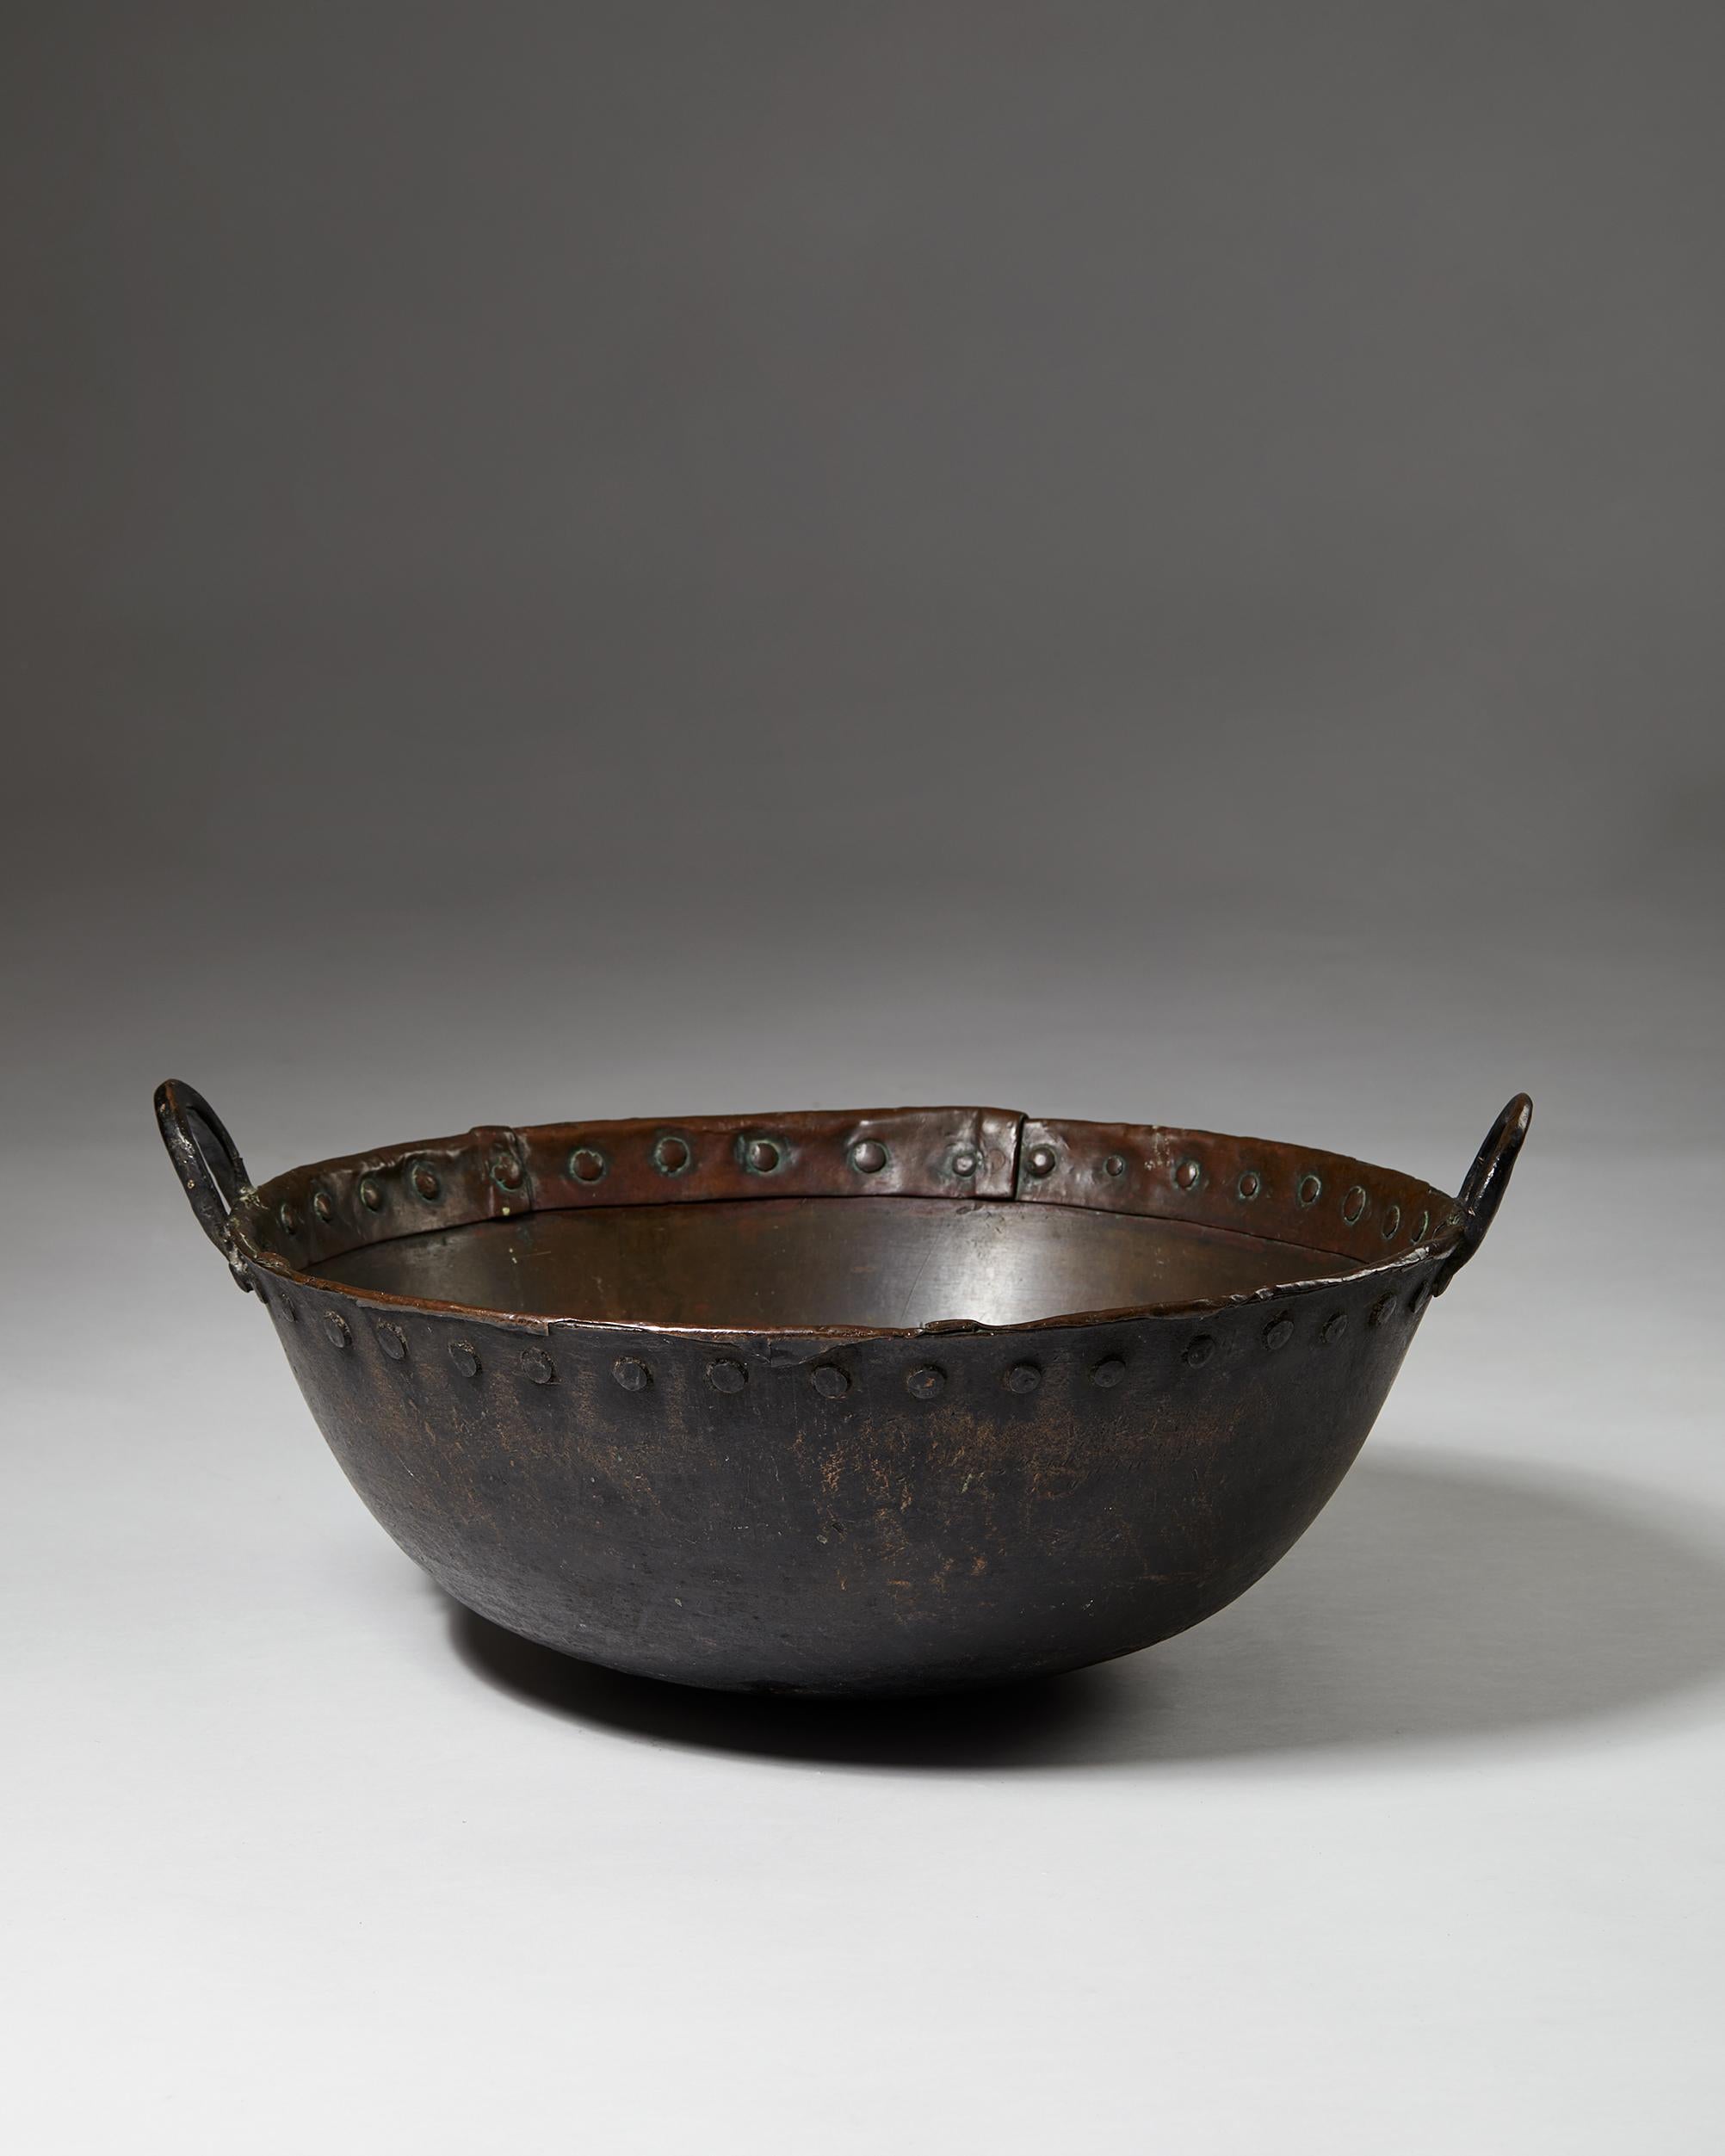 Cauldron, anonymous,
Sweden. 1880s.

Copper cauldron.

Dimensions:
H: 22 cm
D: 59 cm
